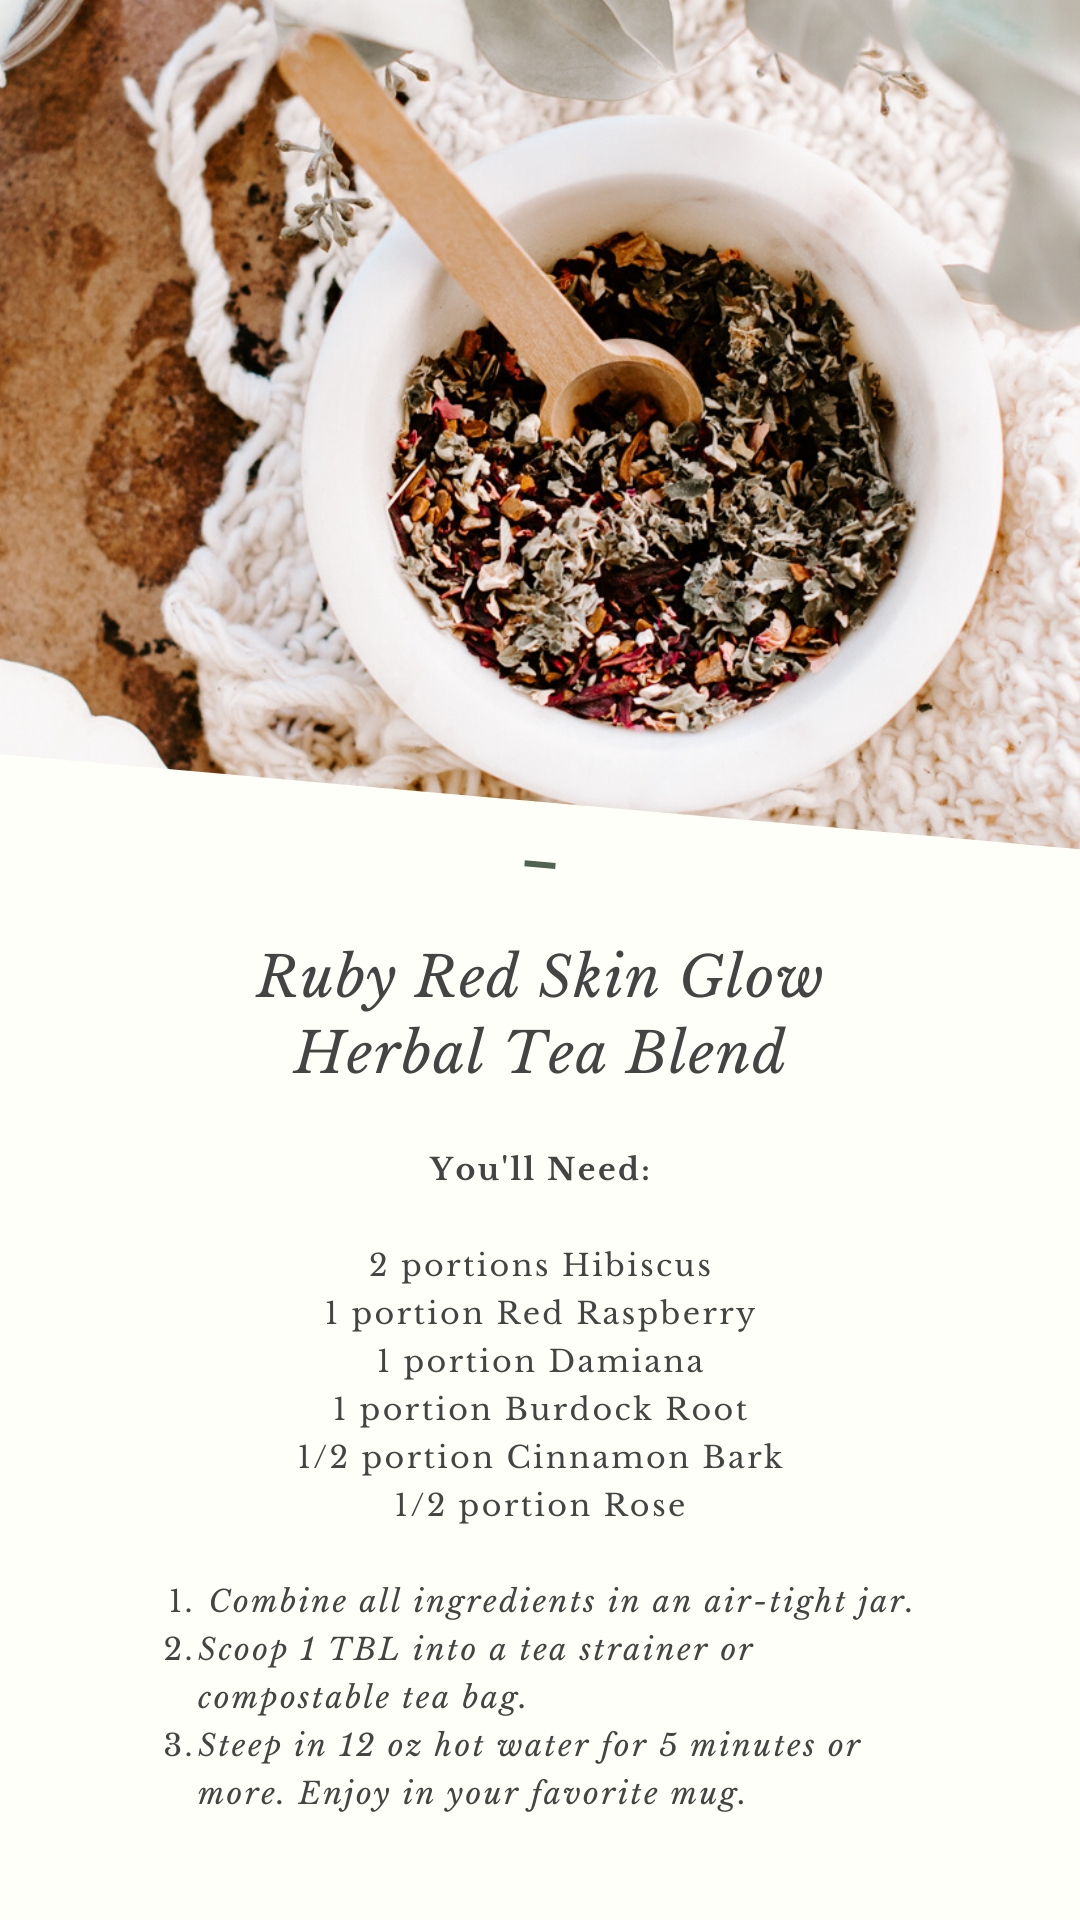 How to make hibiscus tea